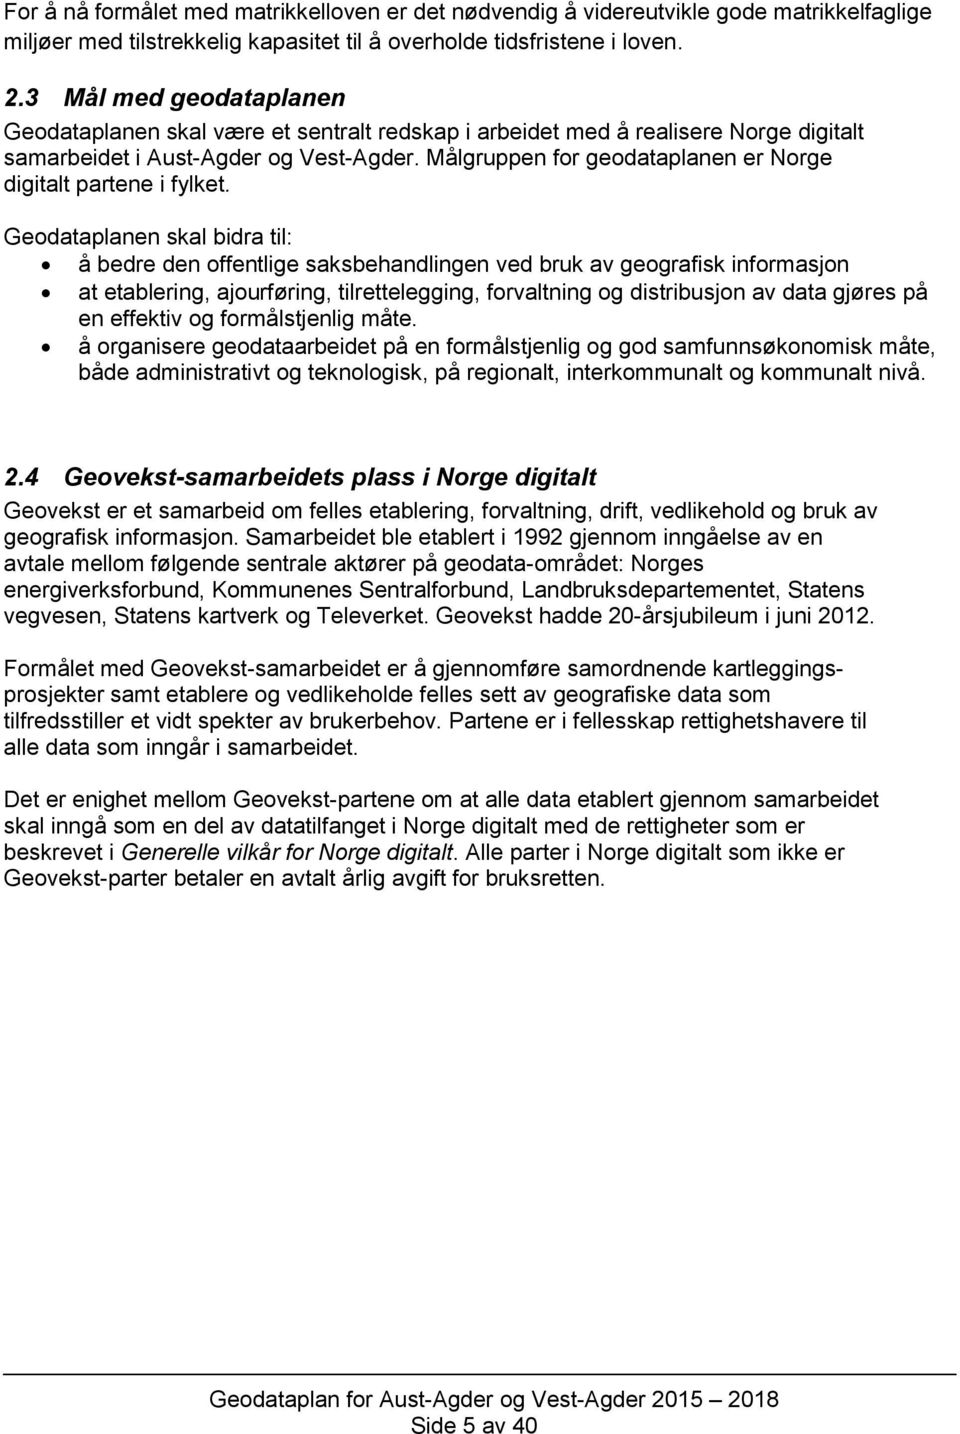 gruppen for geodataplanen er Norge digitalt partene i fylket.